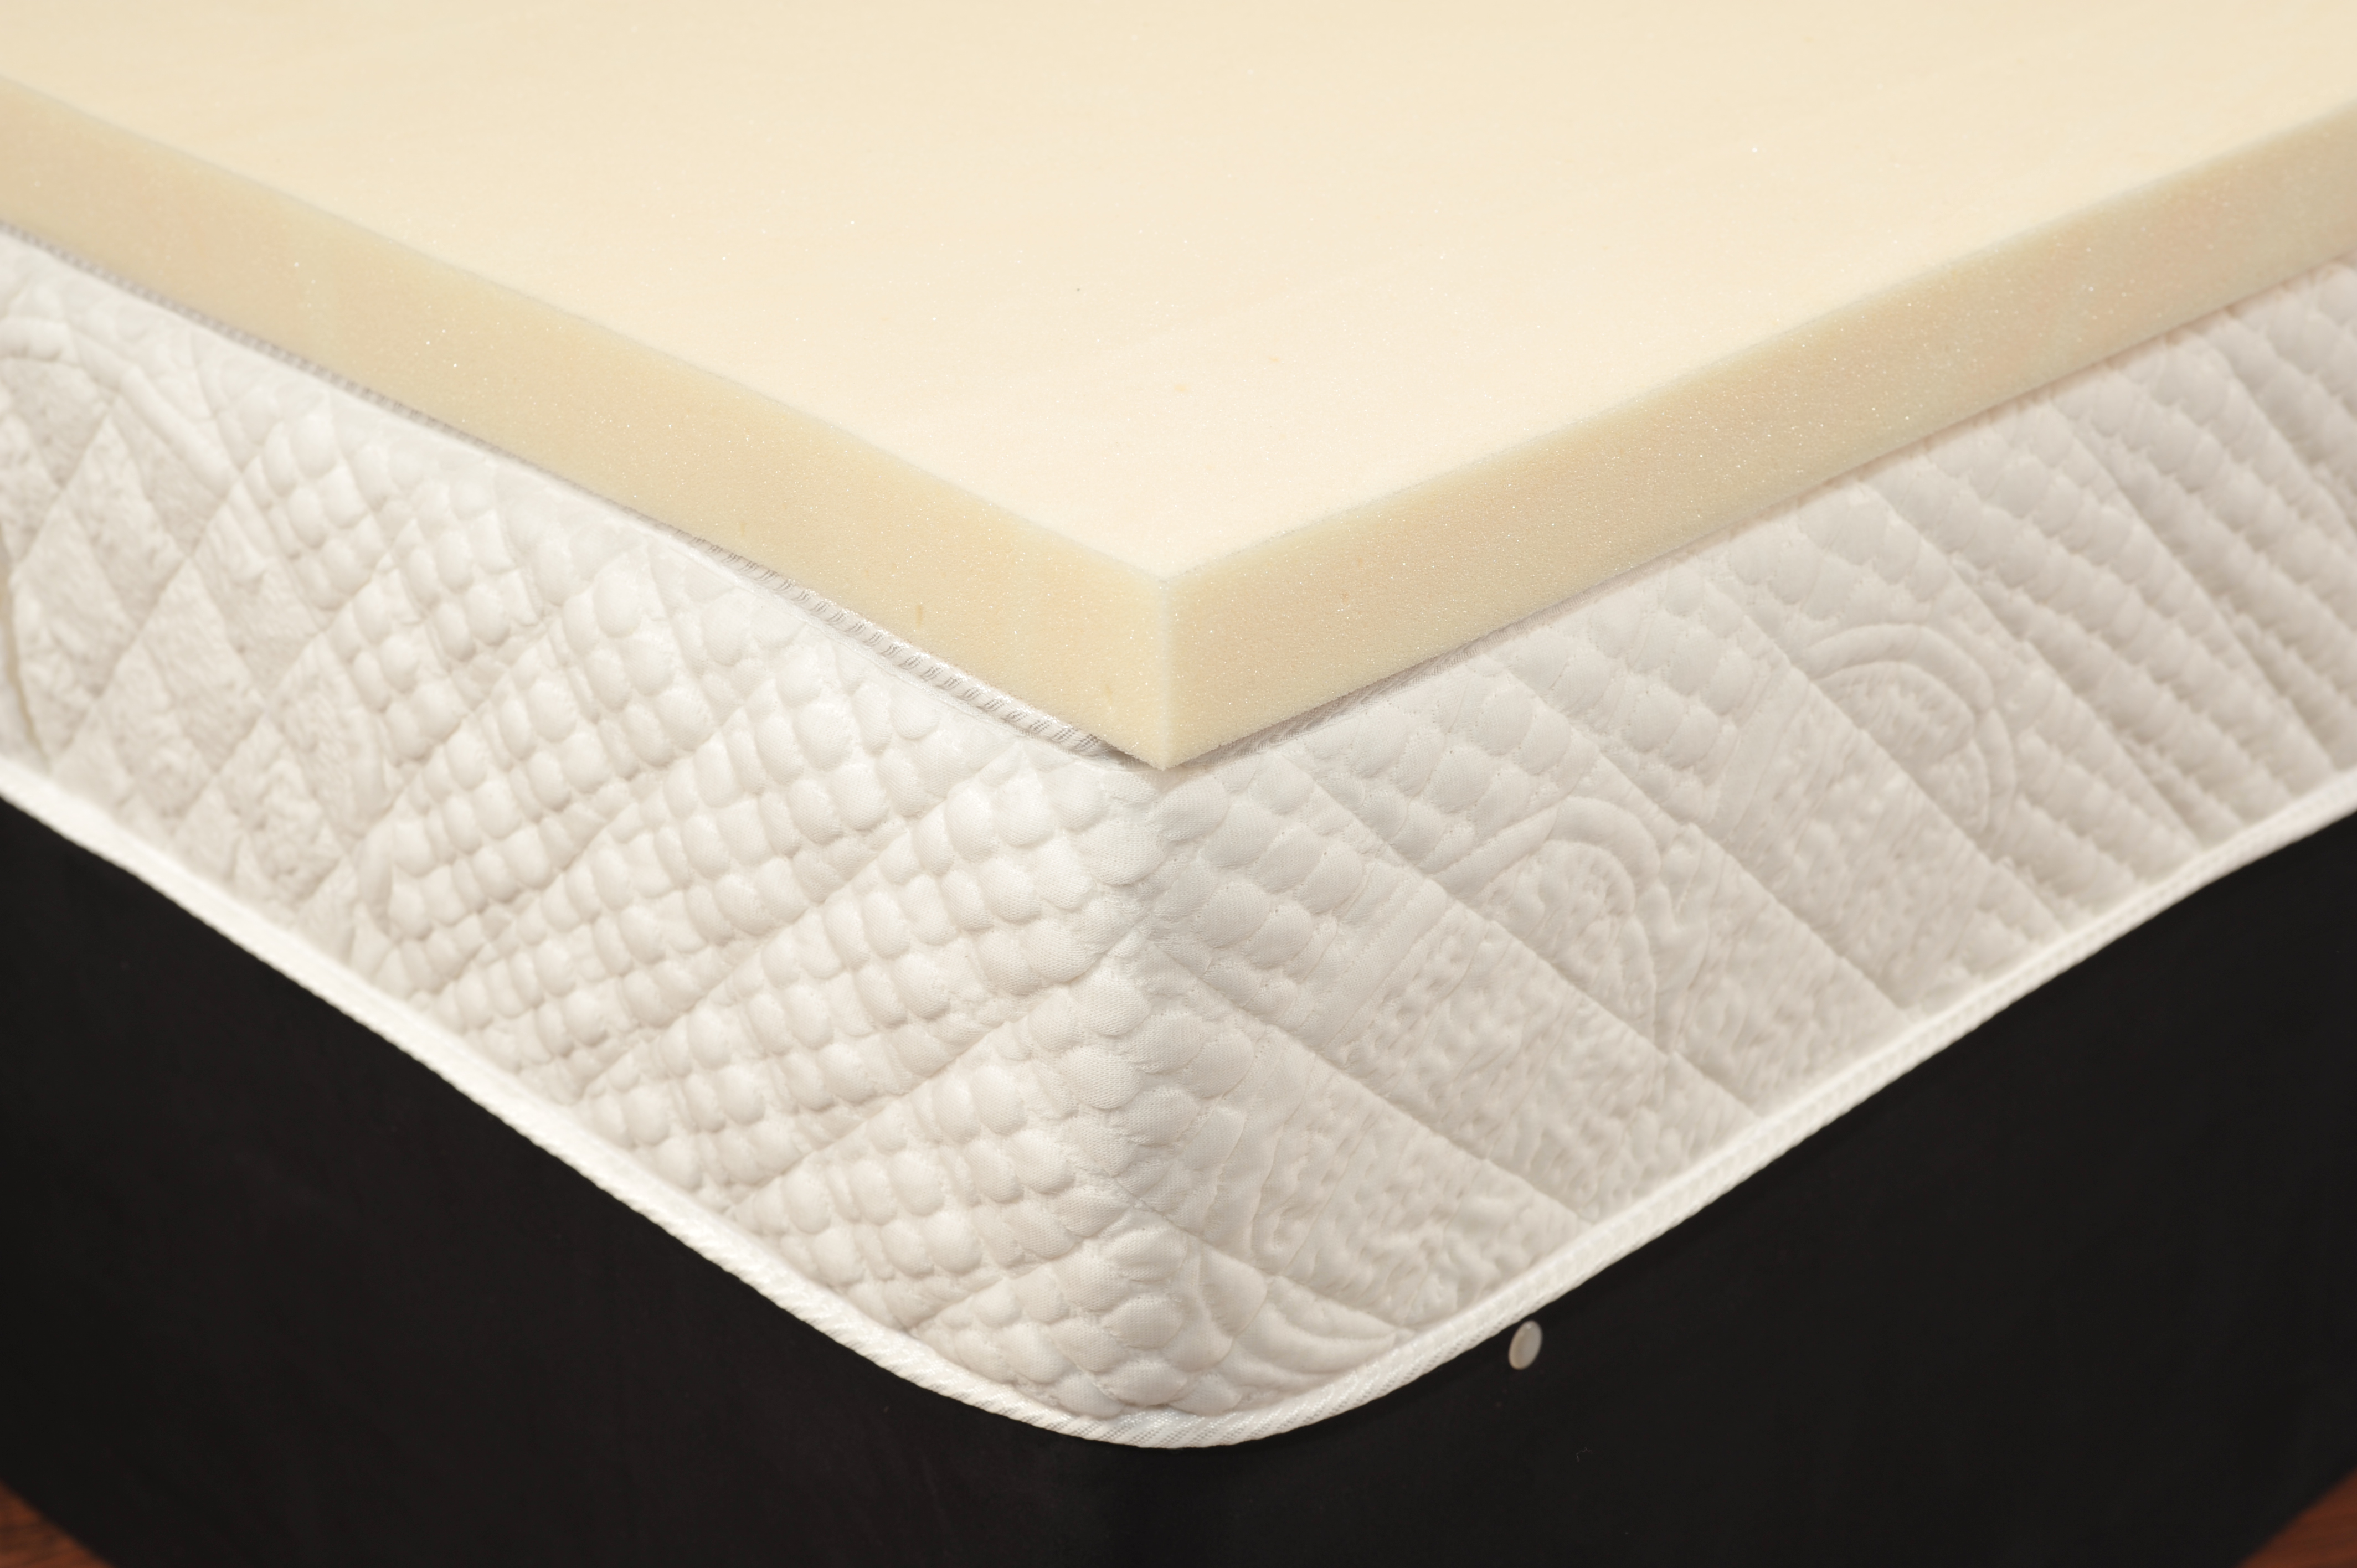 buy memory foam mattress topper